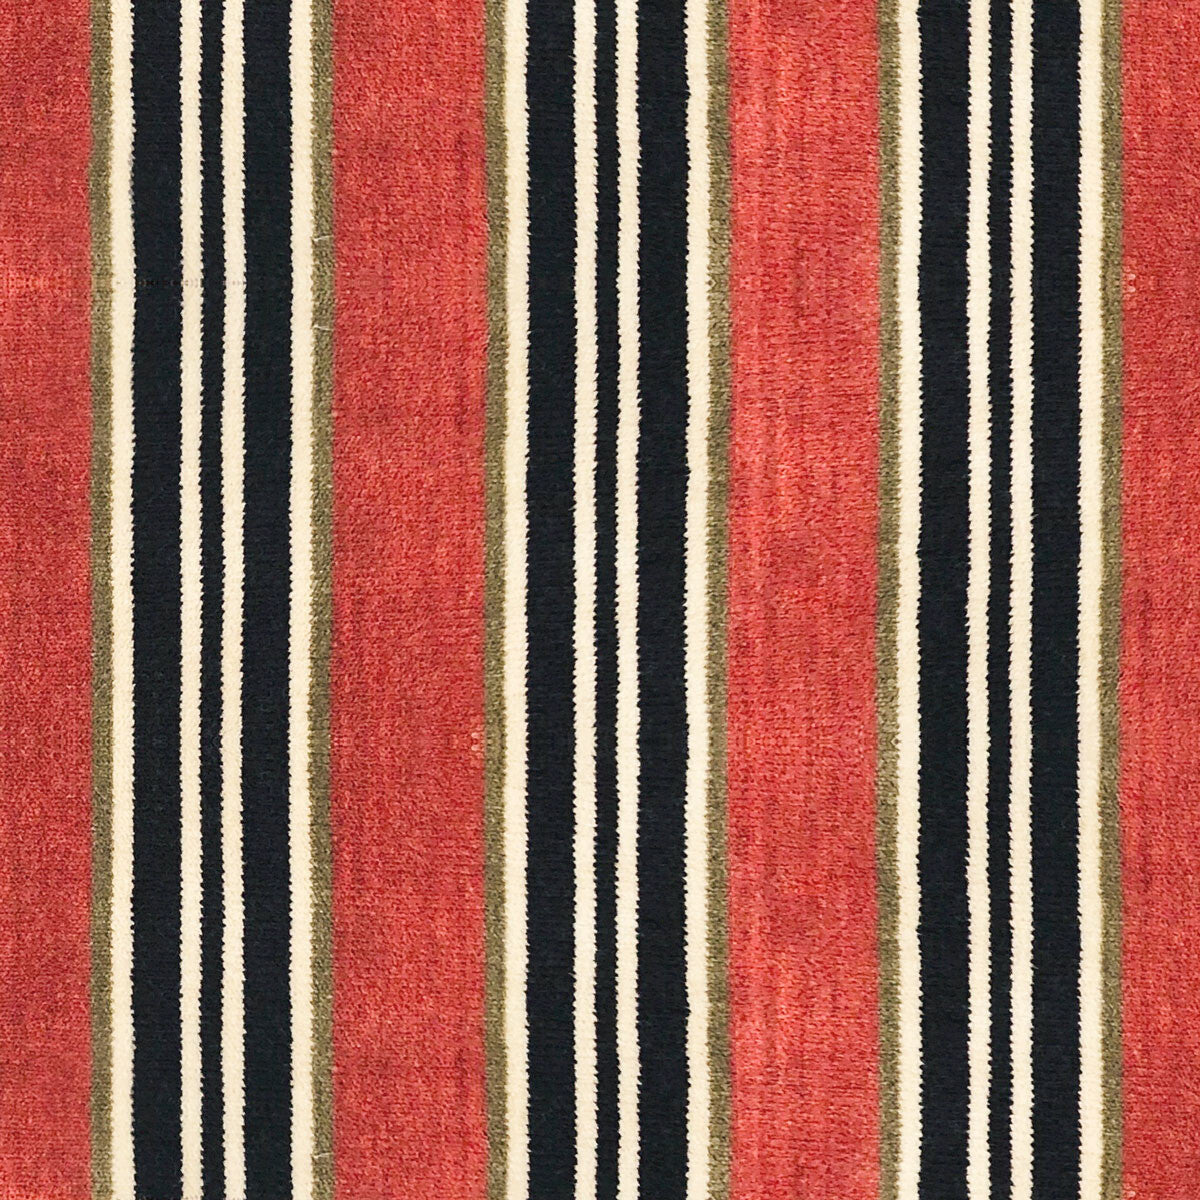 Tucha fabric in teja/verde color - pattern LCT1051.003.0 - by Gaston y Daniela in the Lorenzo Castillo VI collection